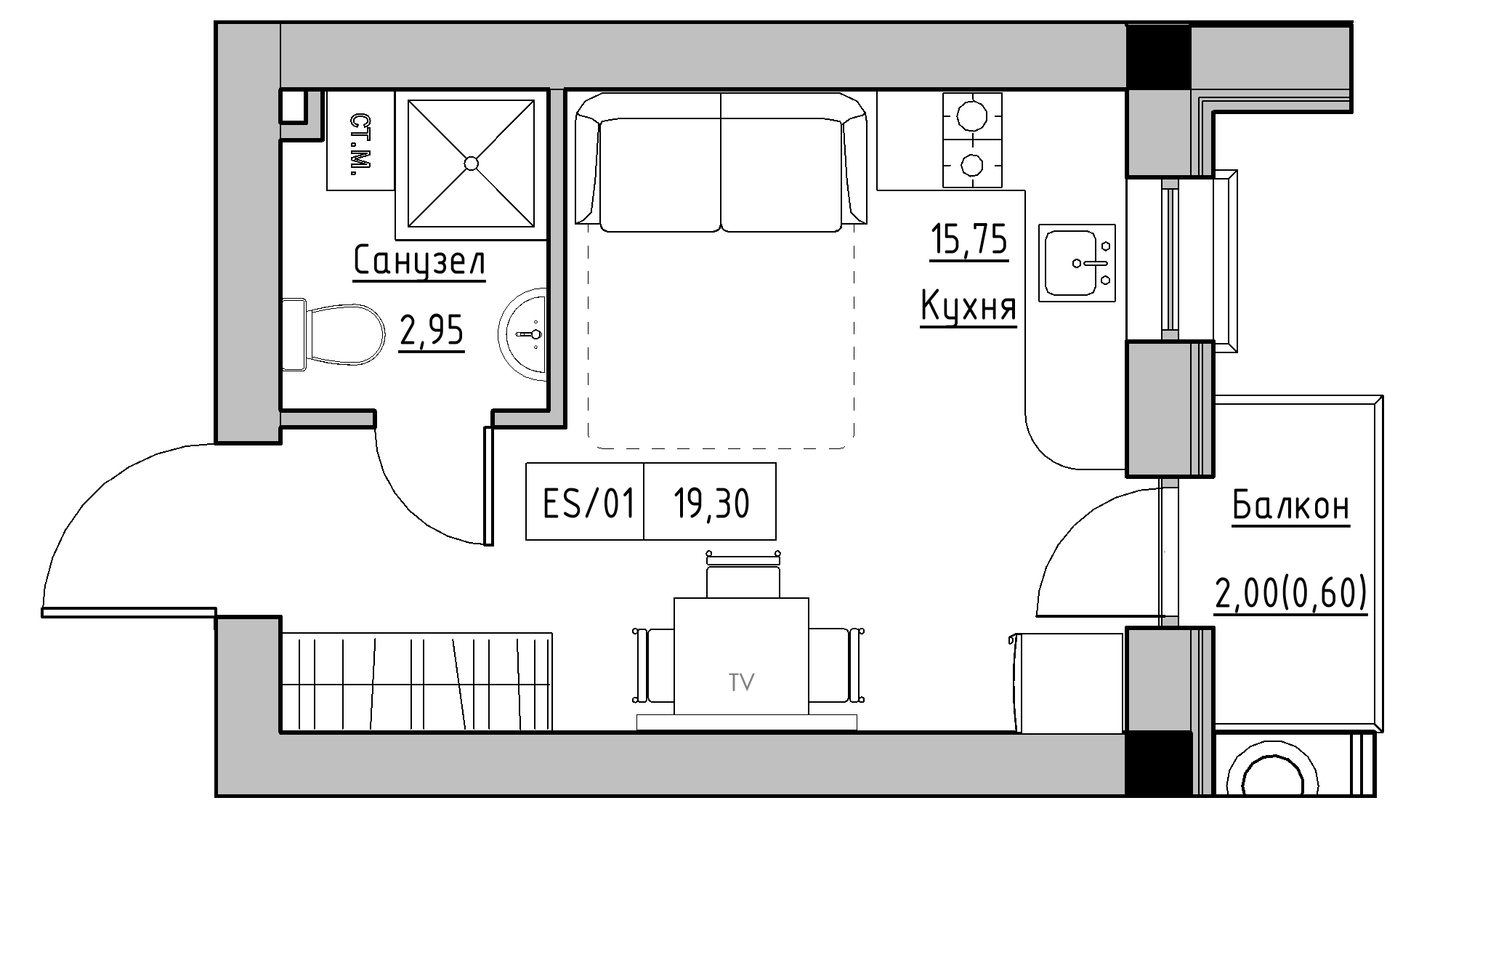 Планування Smart-квартира площею 19.3м2, KS-010-05/0013.